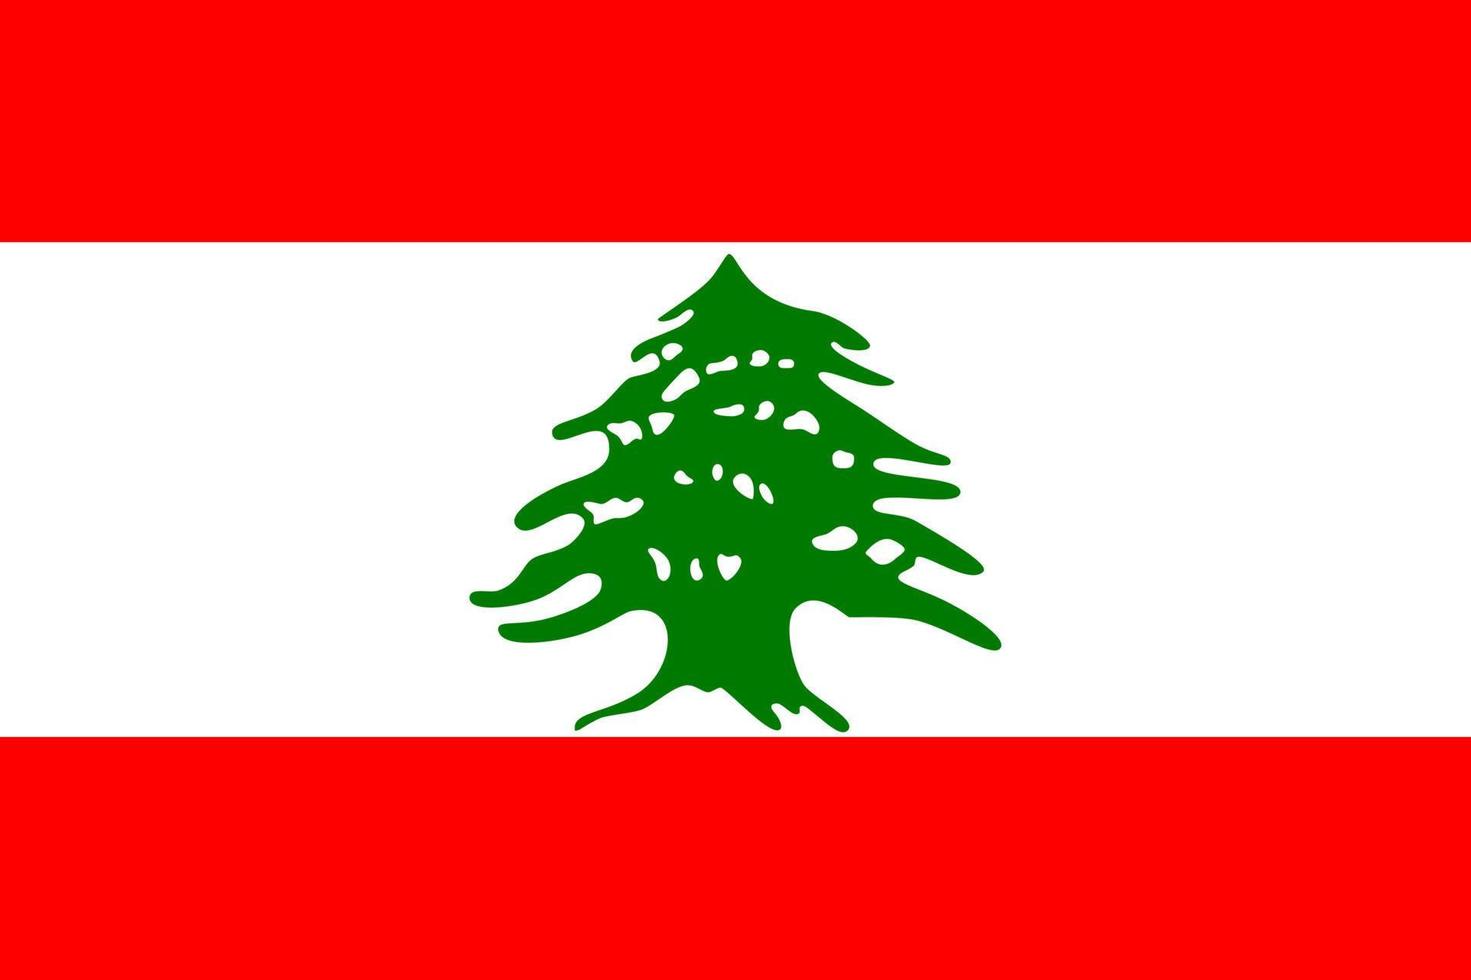 Flagge des Libanon. symbol des unabhängigkeitstags, souvenir-fußballspiel, knopfsprache, symbol. vektor